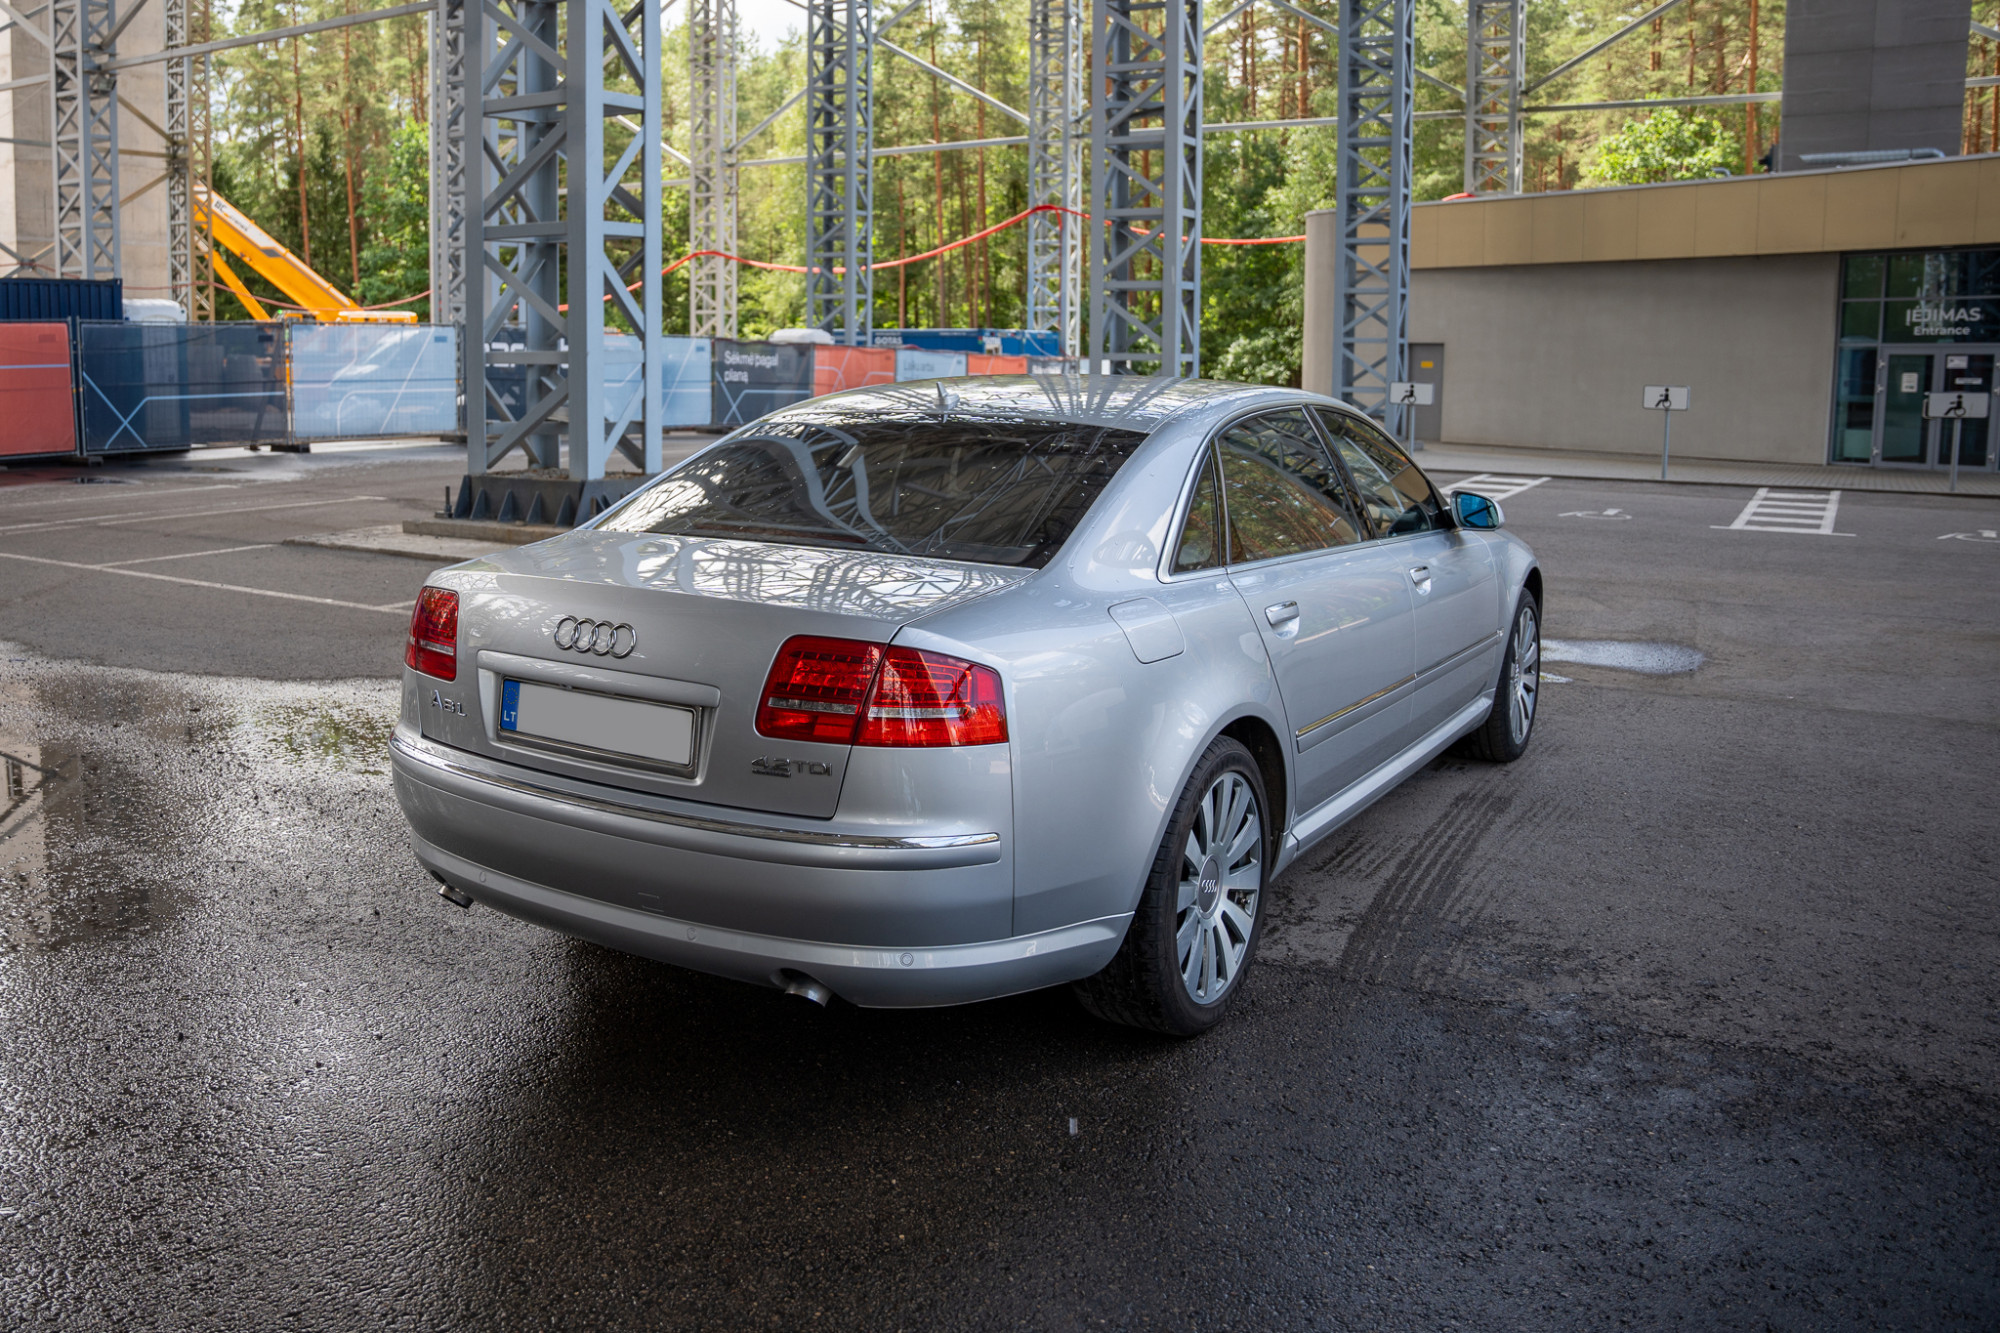 Druskininkų savivaldybės administracija elektroniniame viešame prekių aukcione parduoda lengvąjį automobilį Audi A8